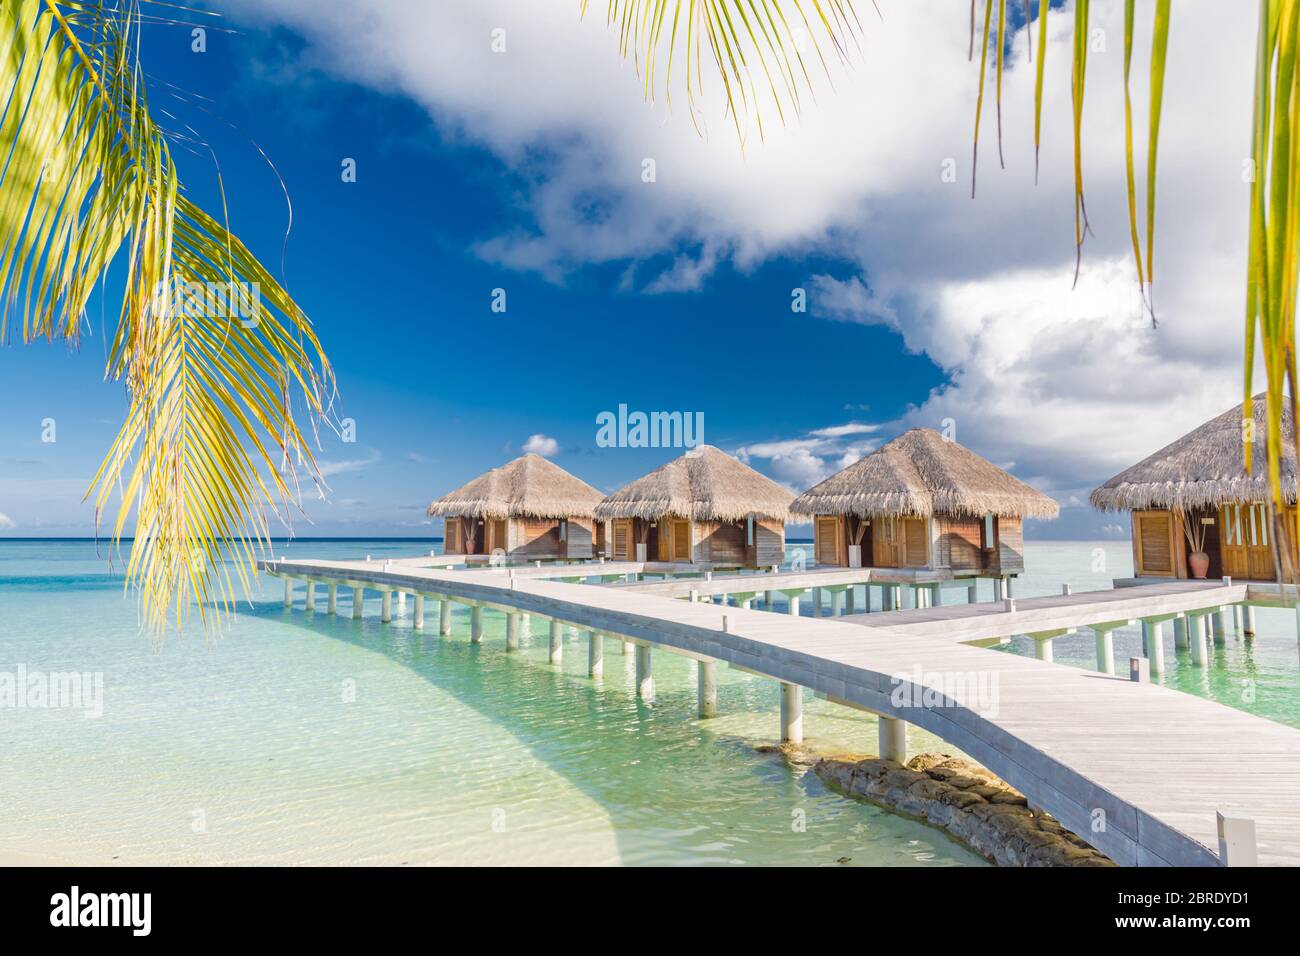 Wunderschöne tropische Malediven Resort Hotel Wasser Villen. Insel mit Strand und Palmenblättern über Meer am Himmel. Luxus Urlaub Urlaub Hintergrund Konzept Stockfoto